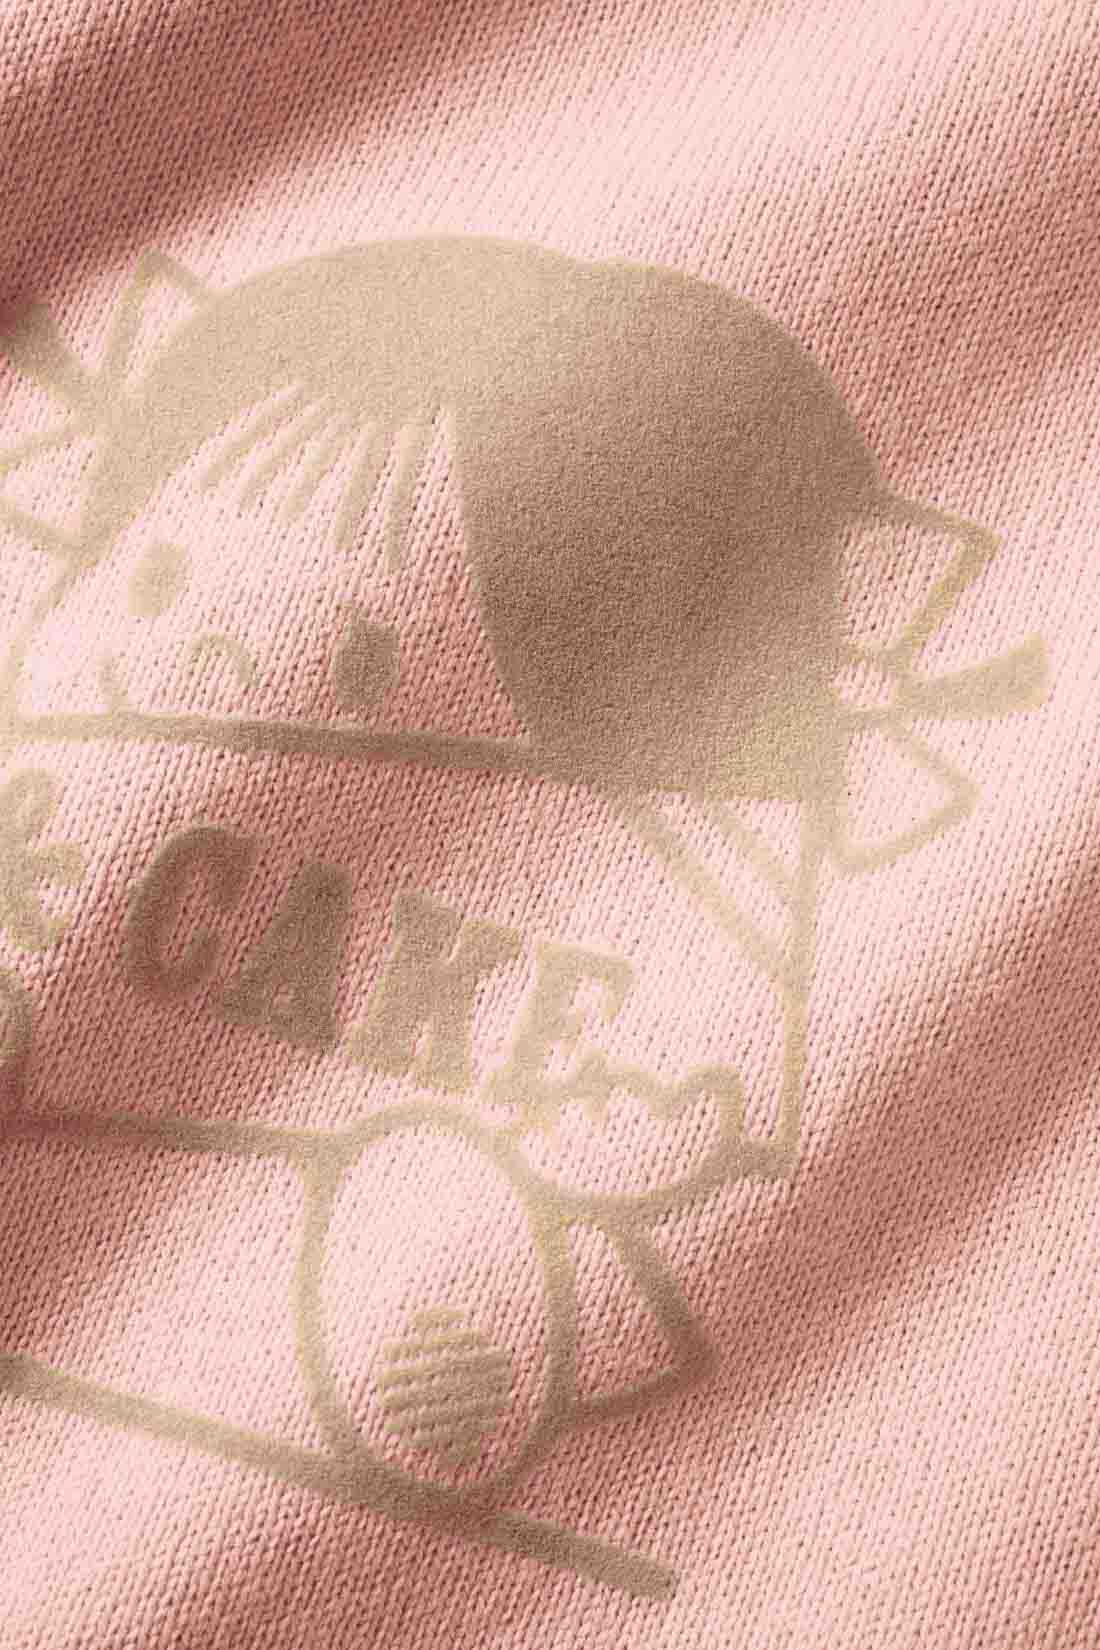 Live in  comfort|Live love cottonプロジェクト リブ イン コンフォート神戸のベーカリーハラダのパンさんとつくったオーガニックコットンのレトロかわいいTシャツ〈ジェイブルー〉|空紡糸を使用した厚みのある生地はオーガニックコットン100％！ フロントのフロッキープリントがおしゃれ。